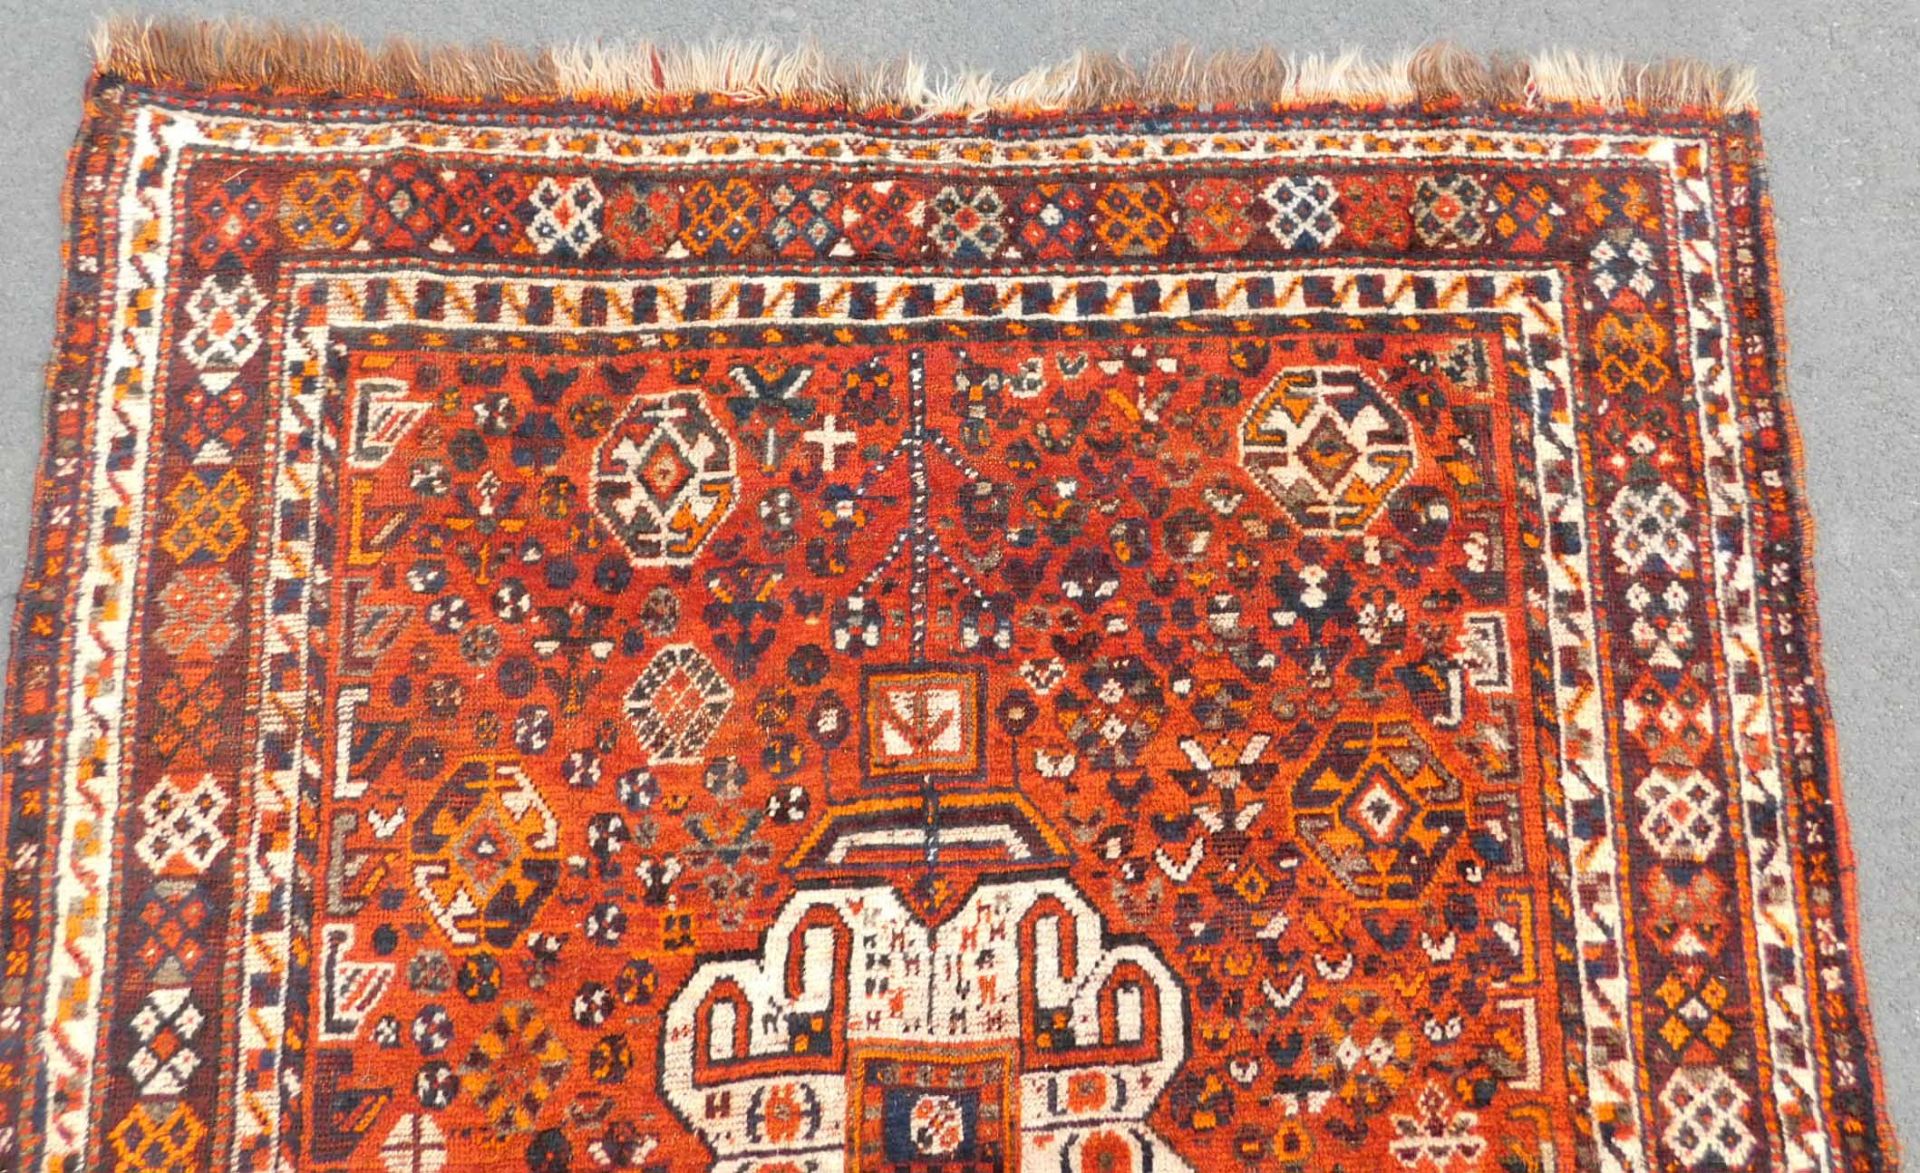 Arab Gabbeh Stammesteppich. Persien. Iran. Circa 80 - 100 Jahre alt.186 cm x 150 cm. Handgeknüpft. - Image 4 of 6